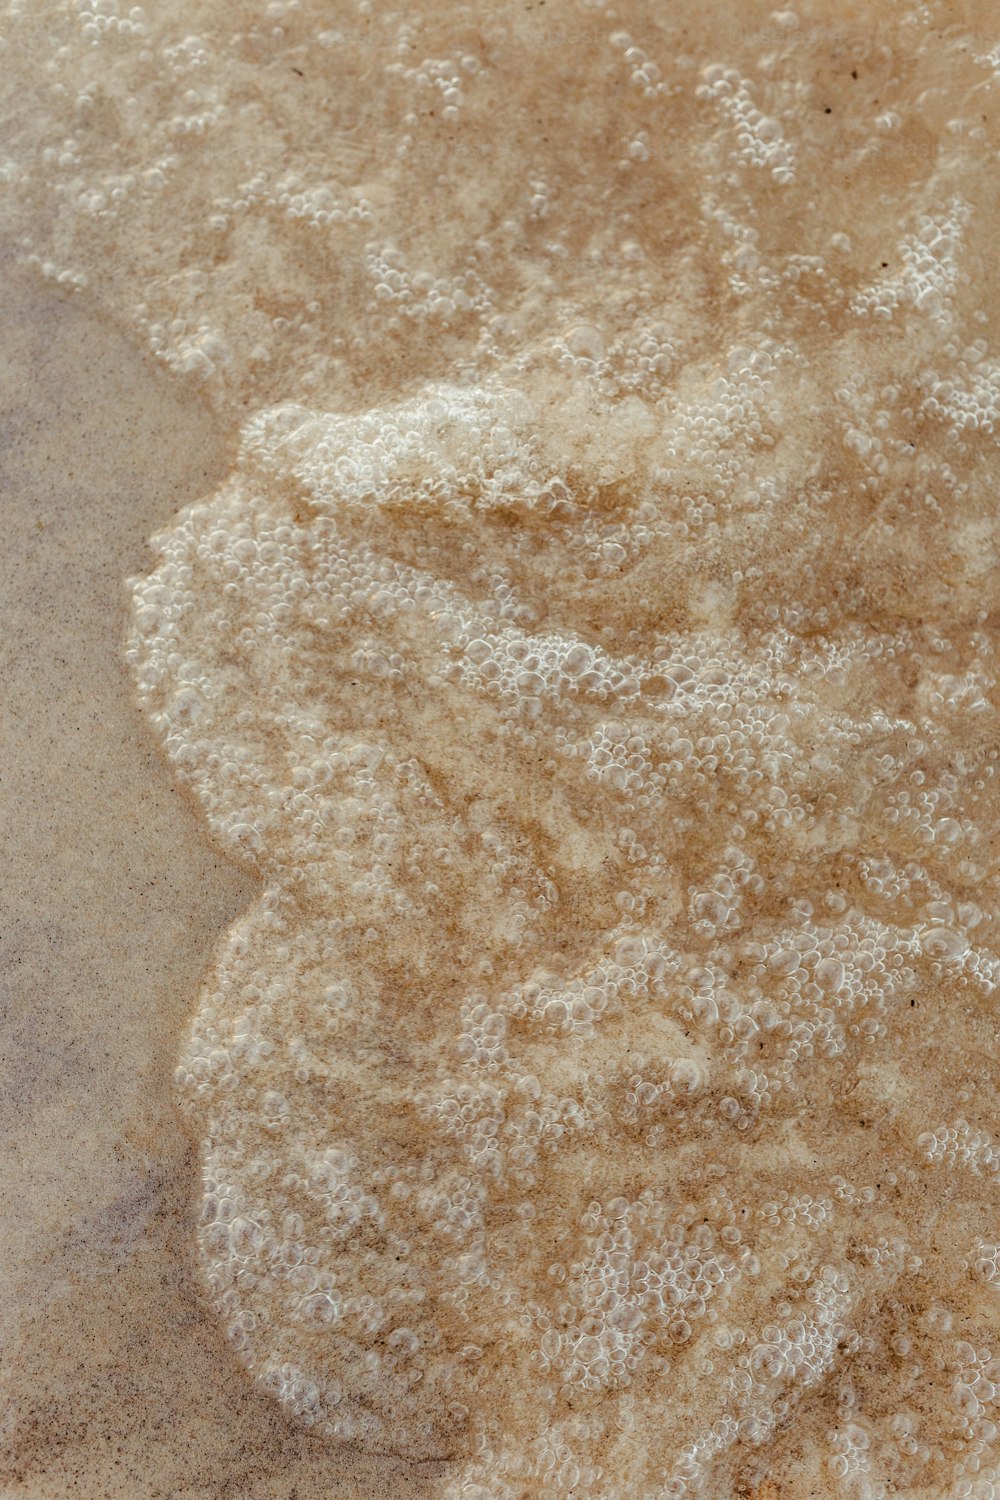 um close up de uma pilha de areia no chão